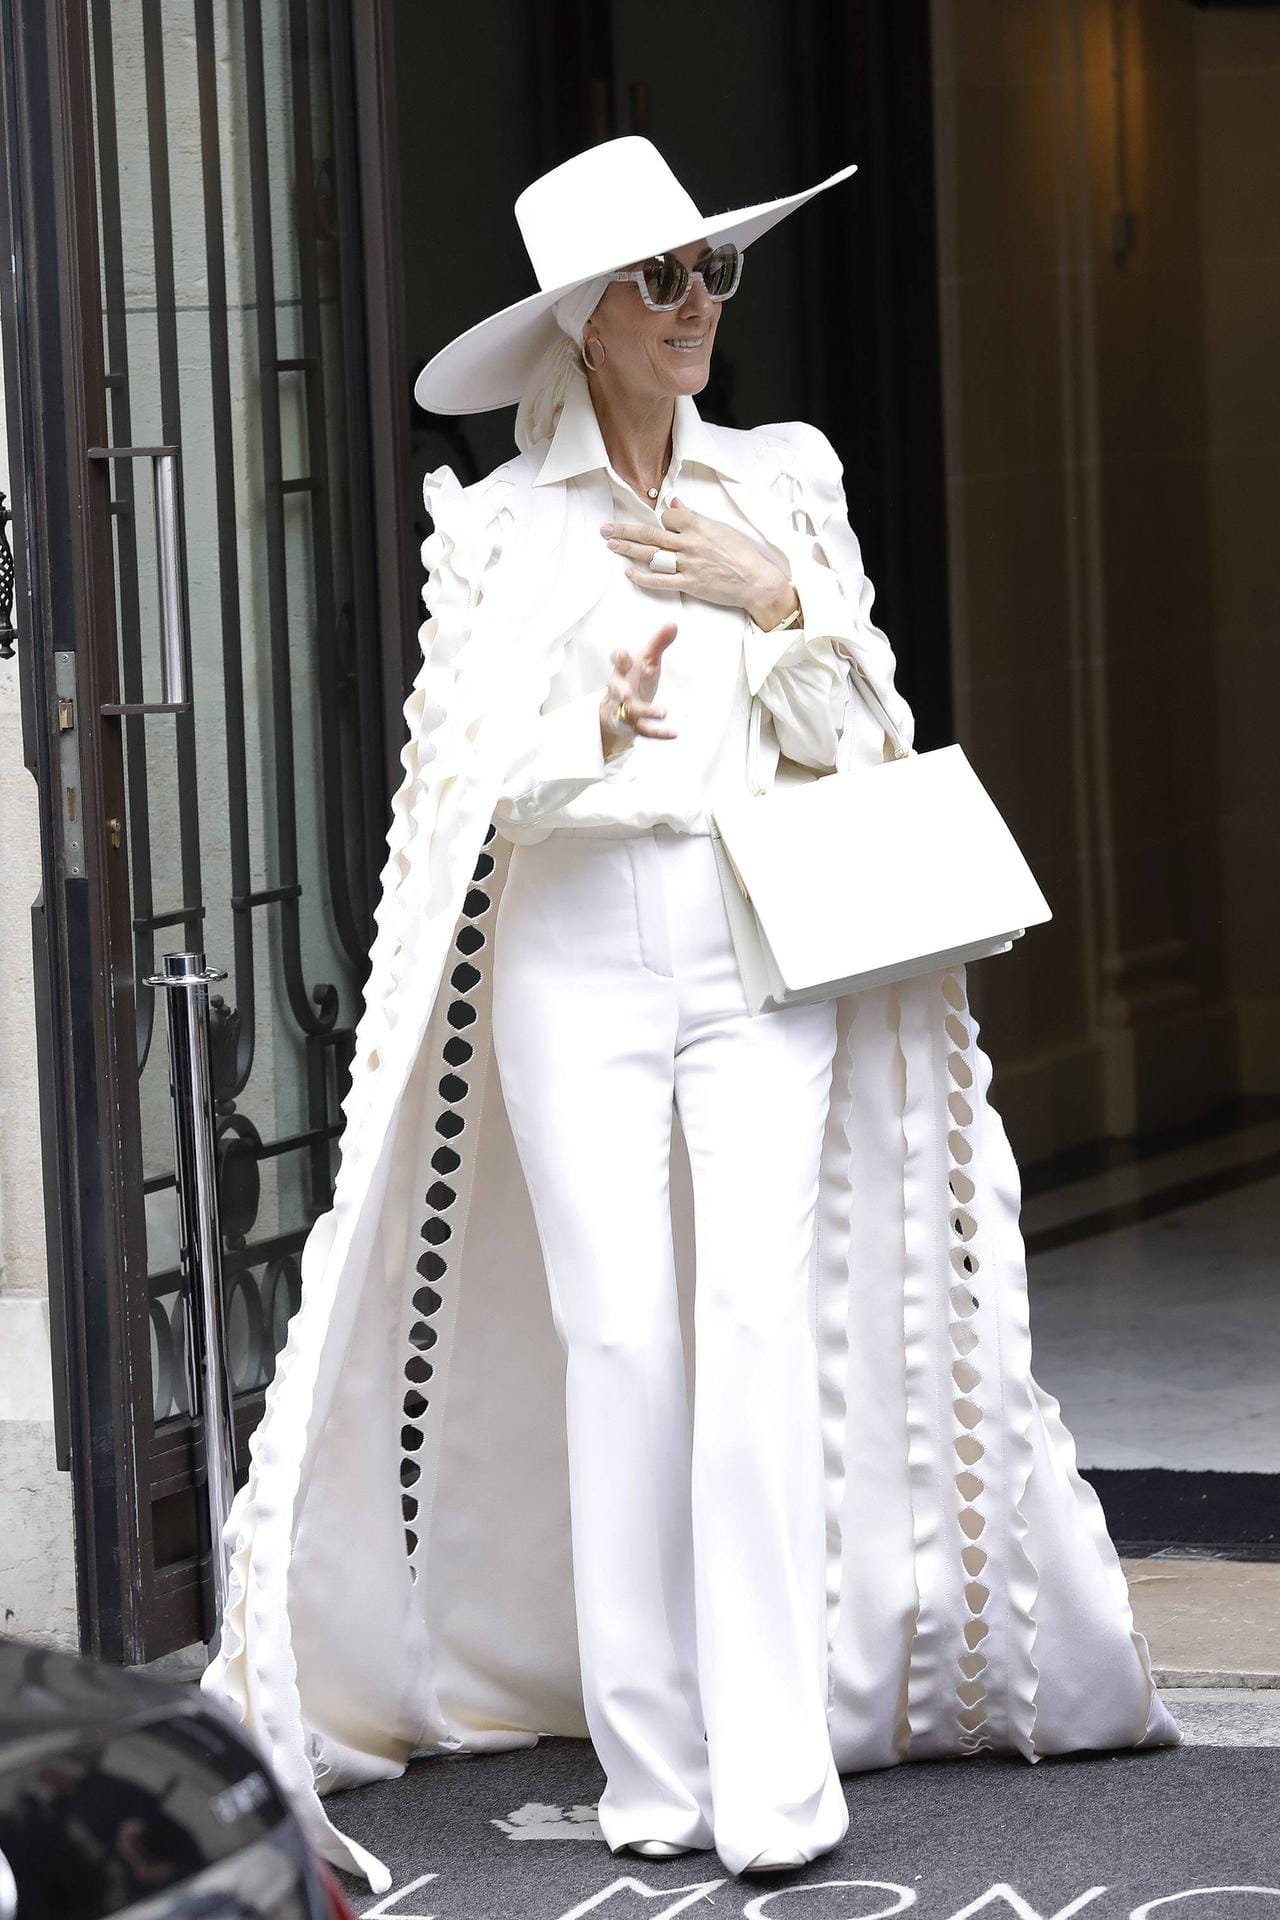 Auf dem Weg zu einem Konzert zeigte sich der Star ganz in Weiß – mit Hut und Umhang.